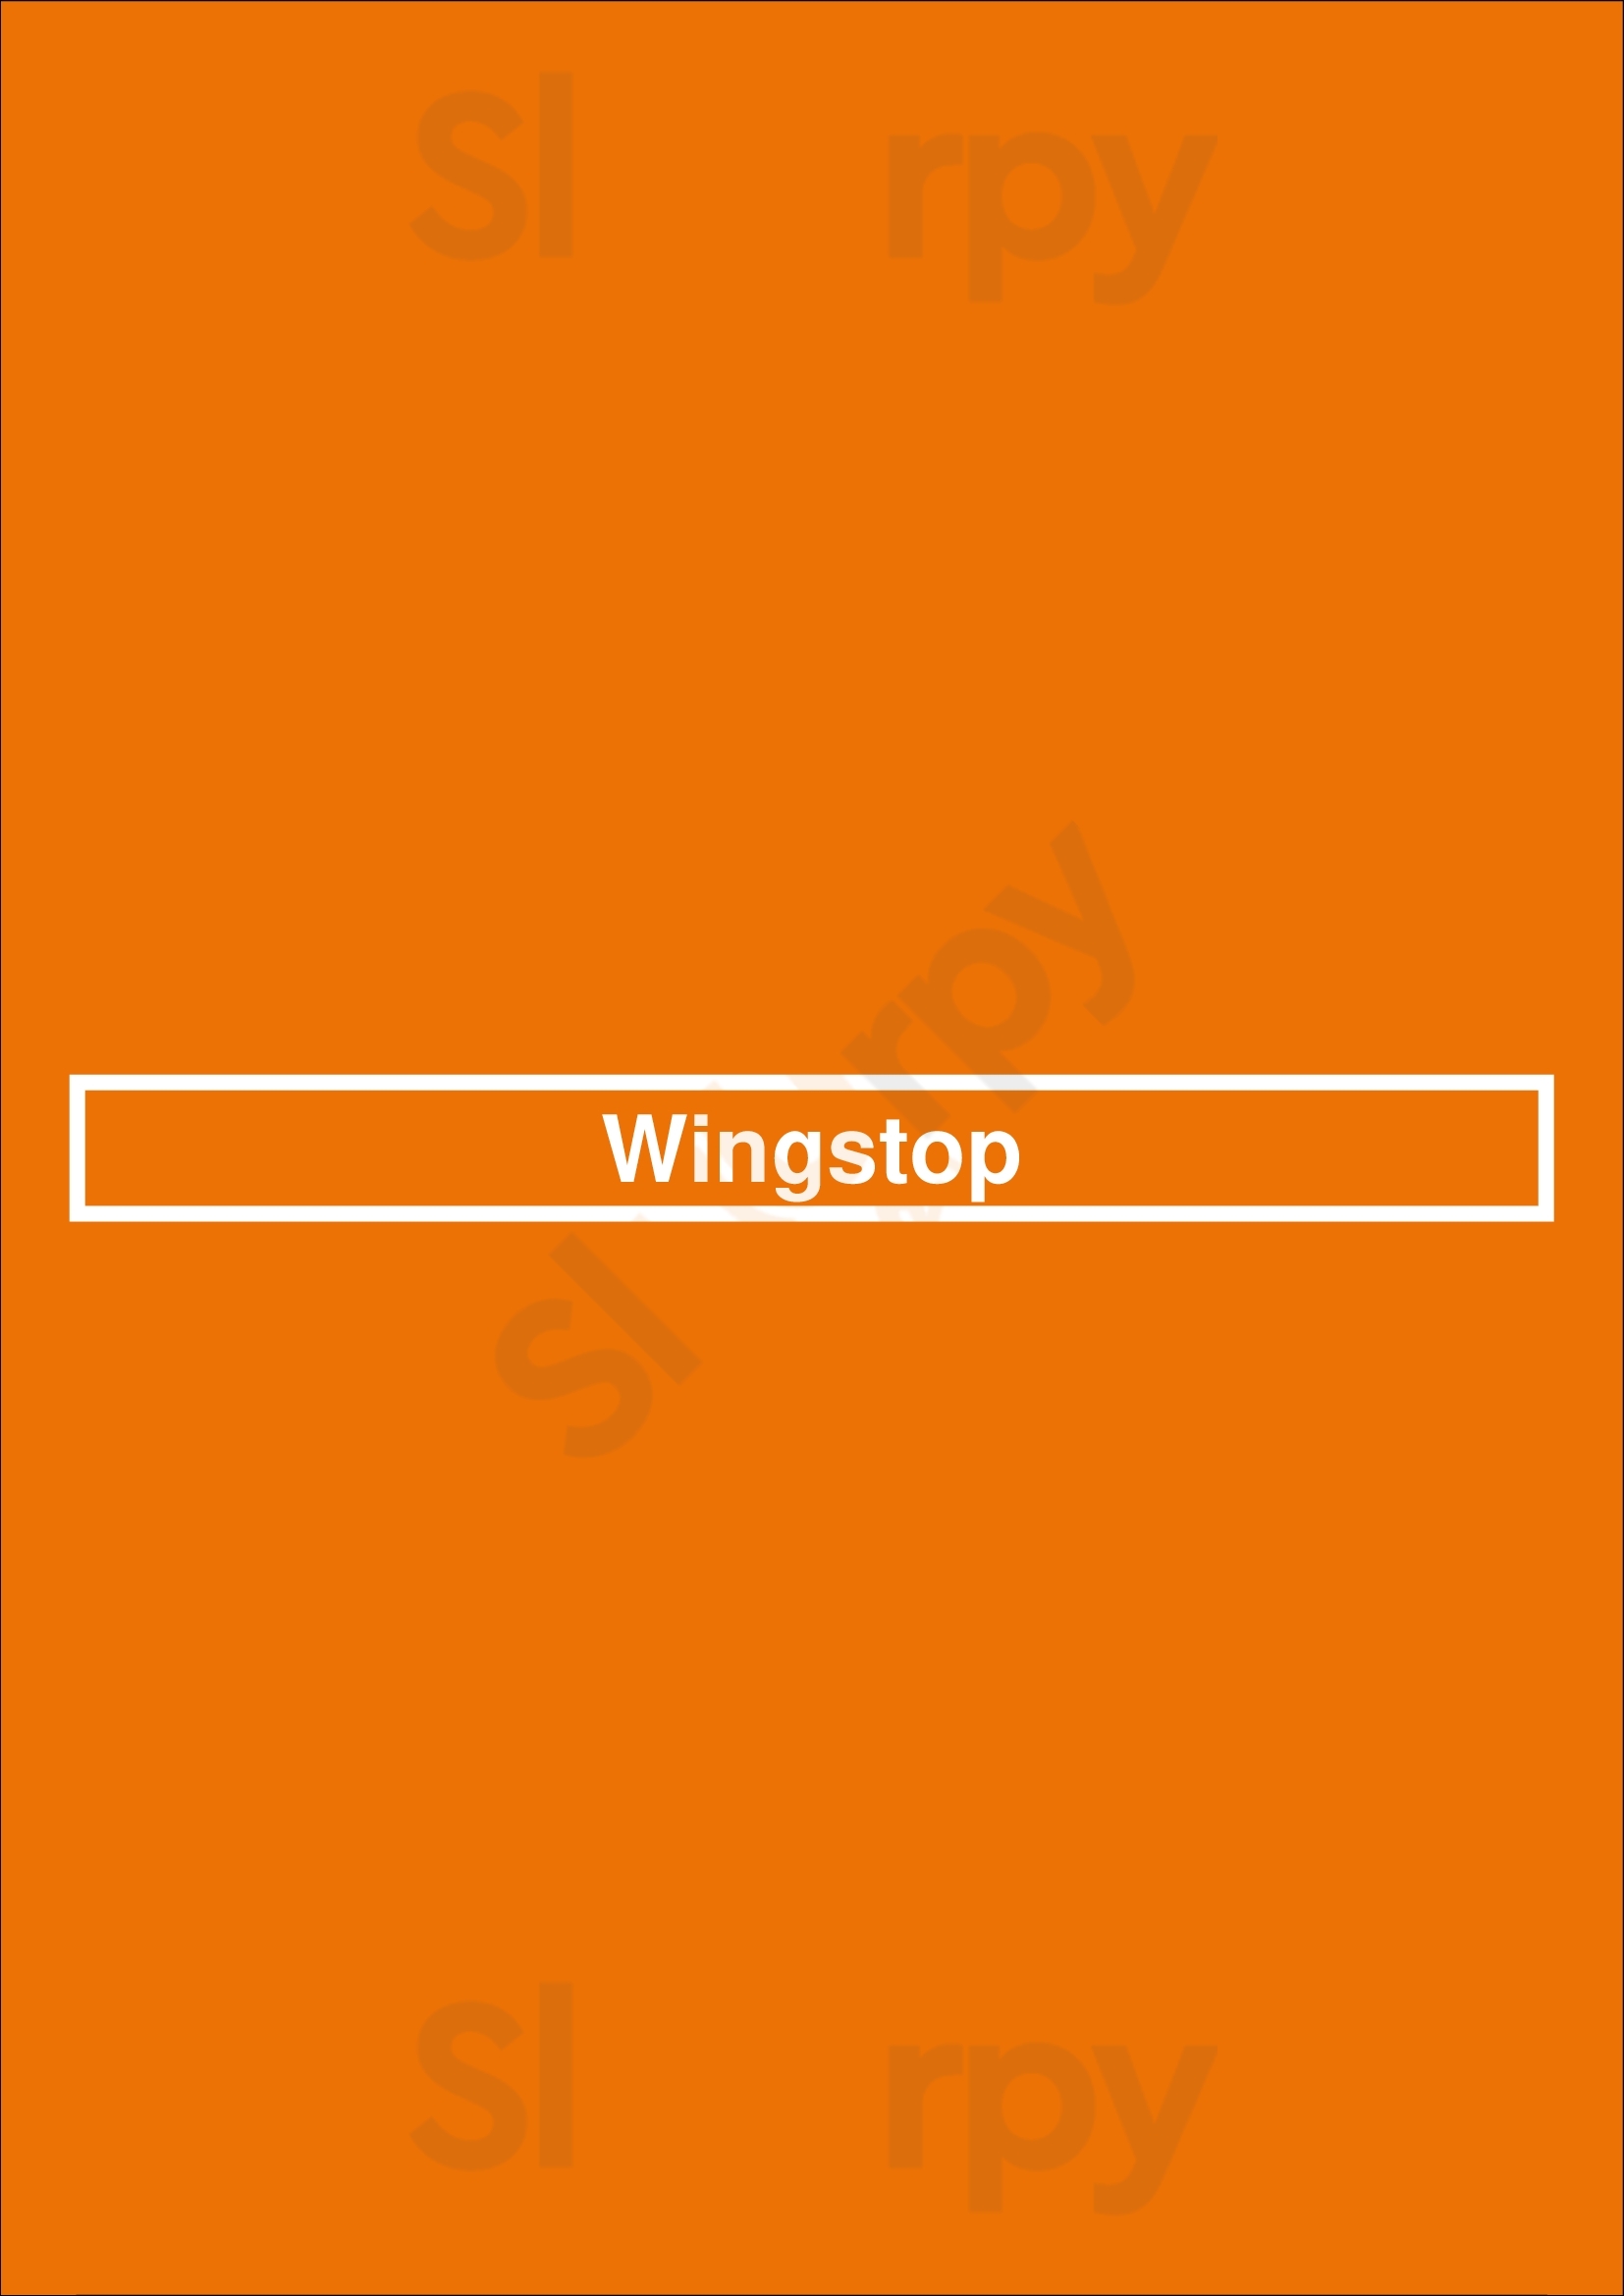 Wingstop Houston Menu - 1